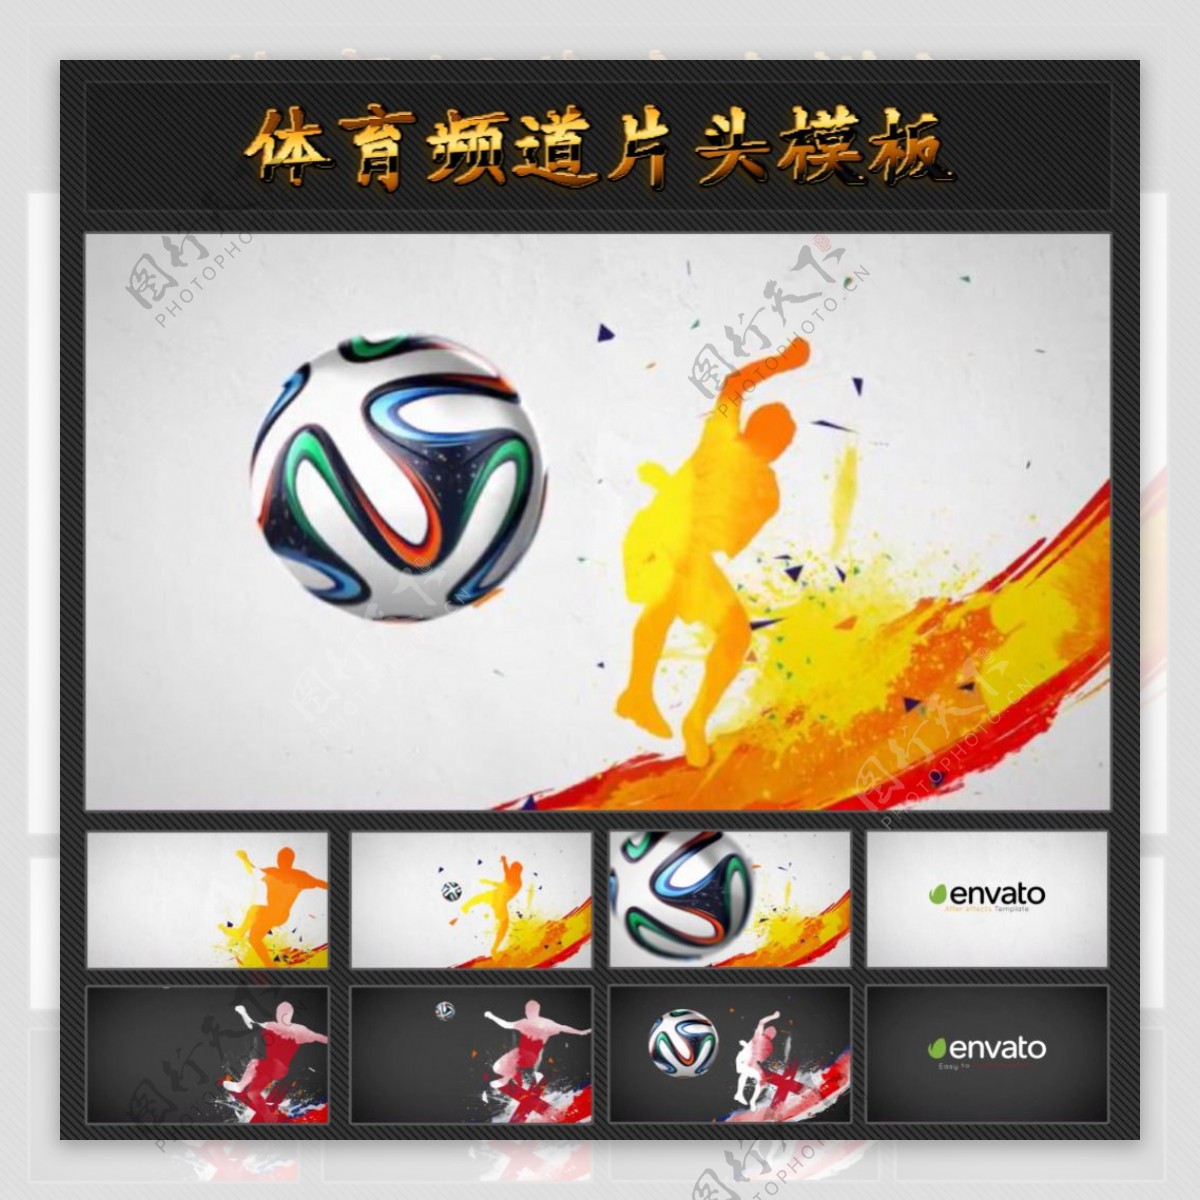 中国风水墨风格足球赛片头模板图片